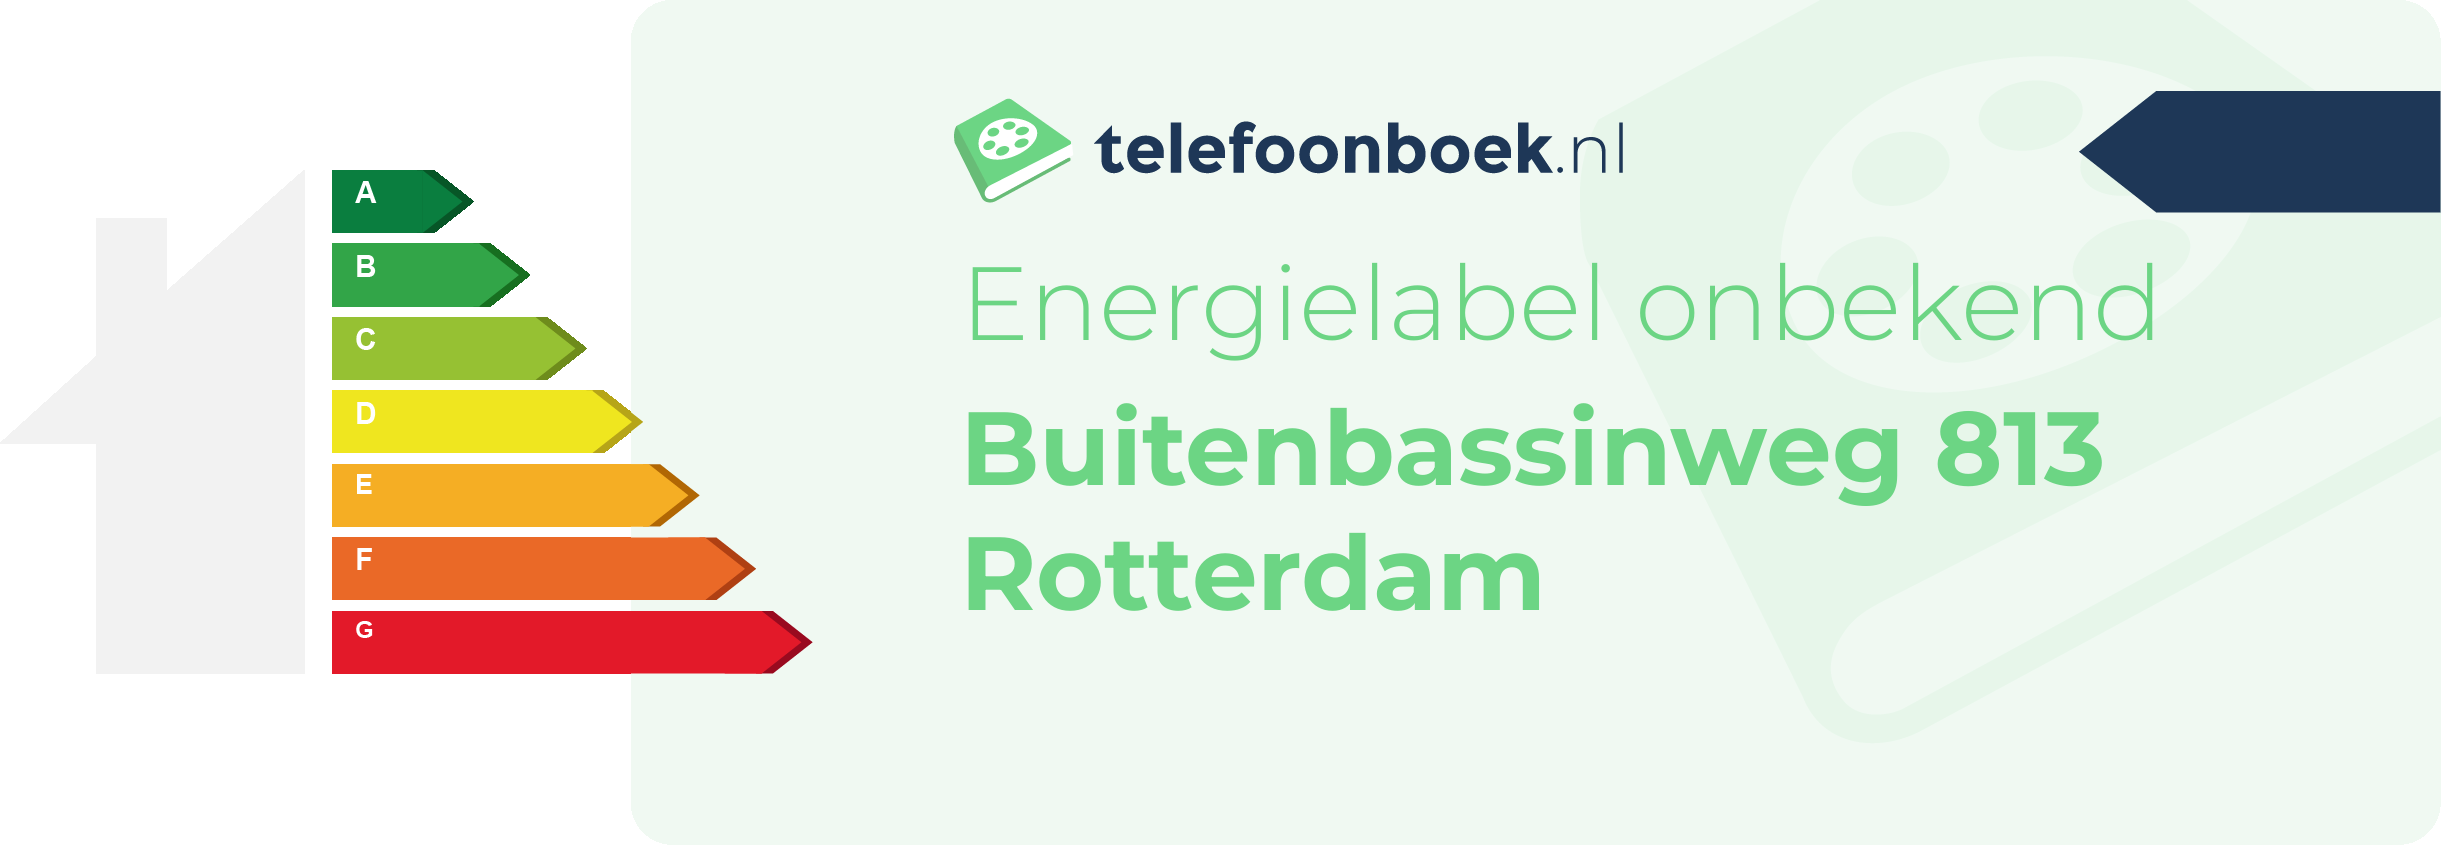 Energielabel Buitenbassinweg 813 Rotterdam